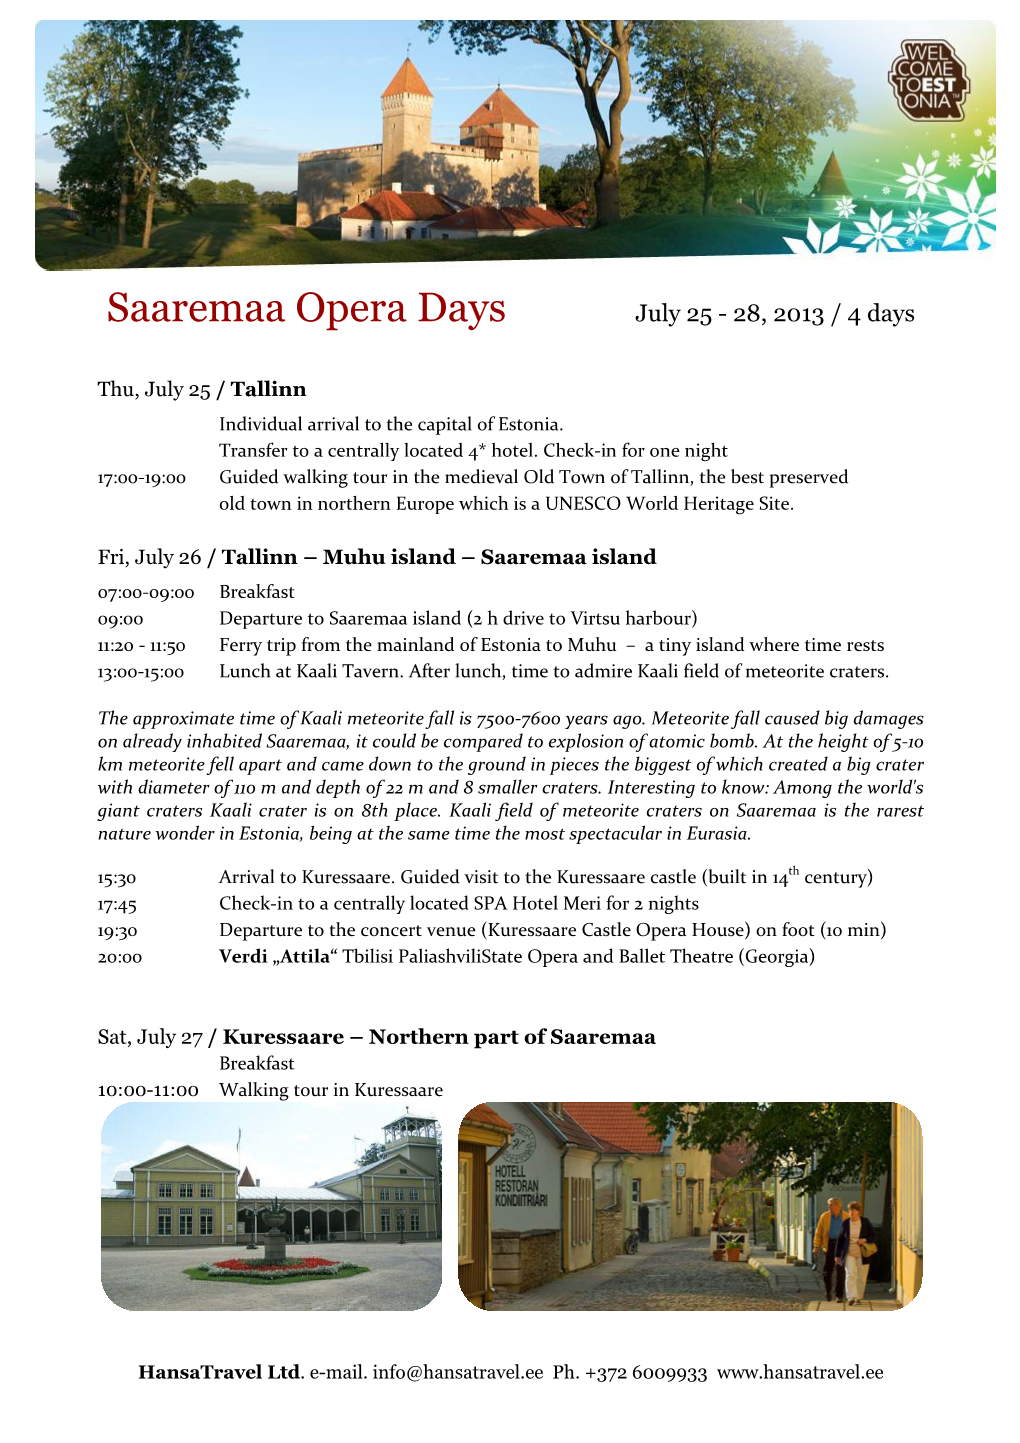 Saaremaa Opera Days July 25 - 28, 2013 / 4 Days